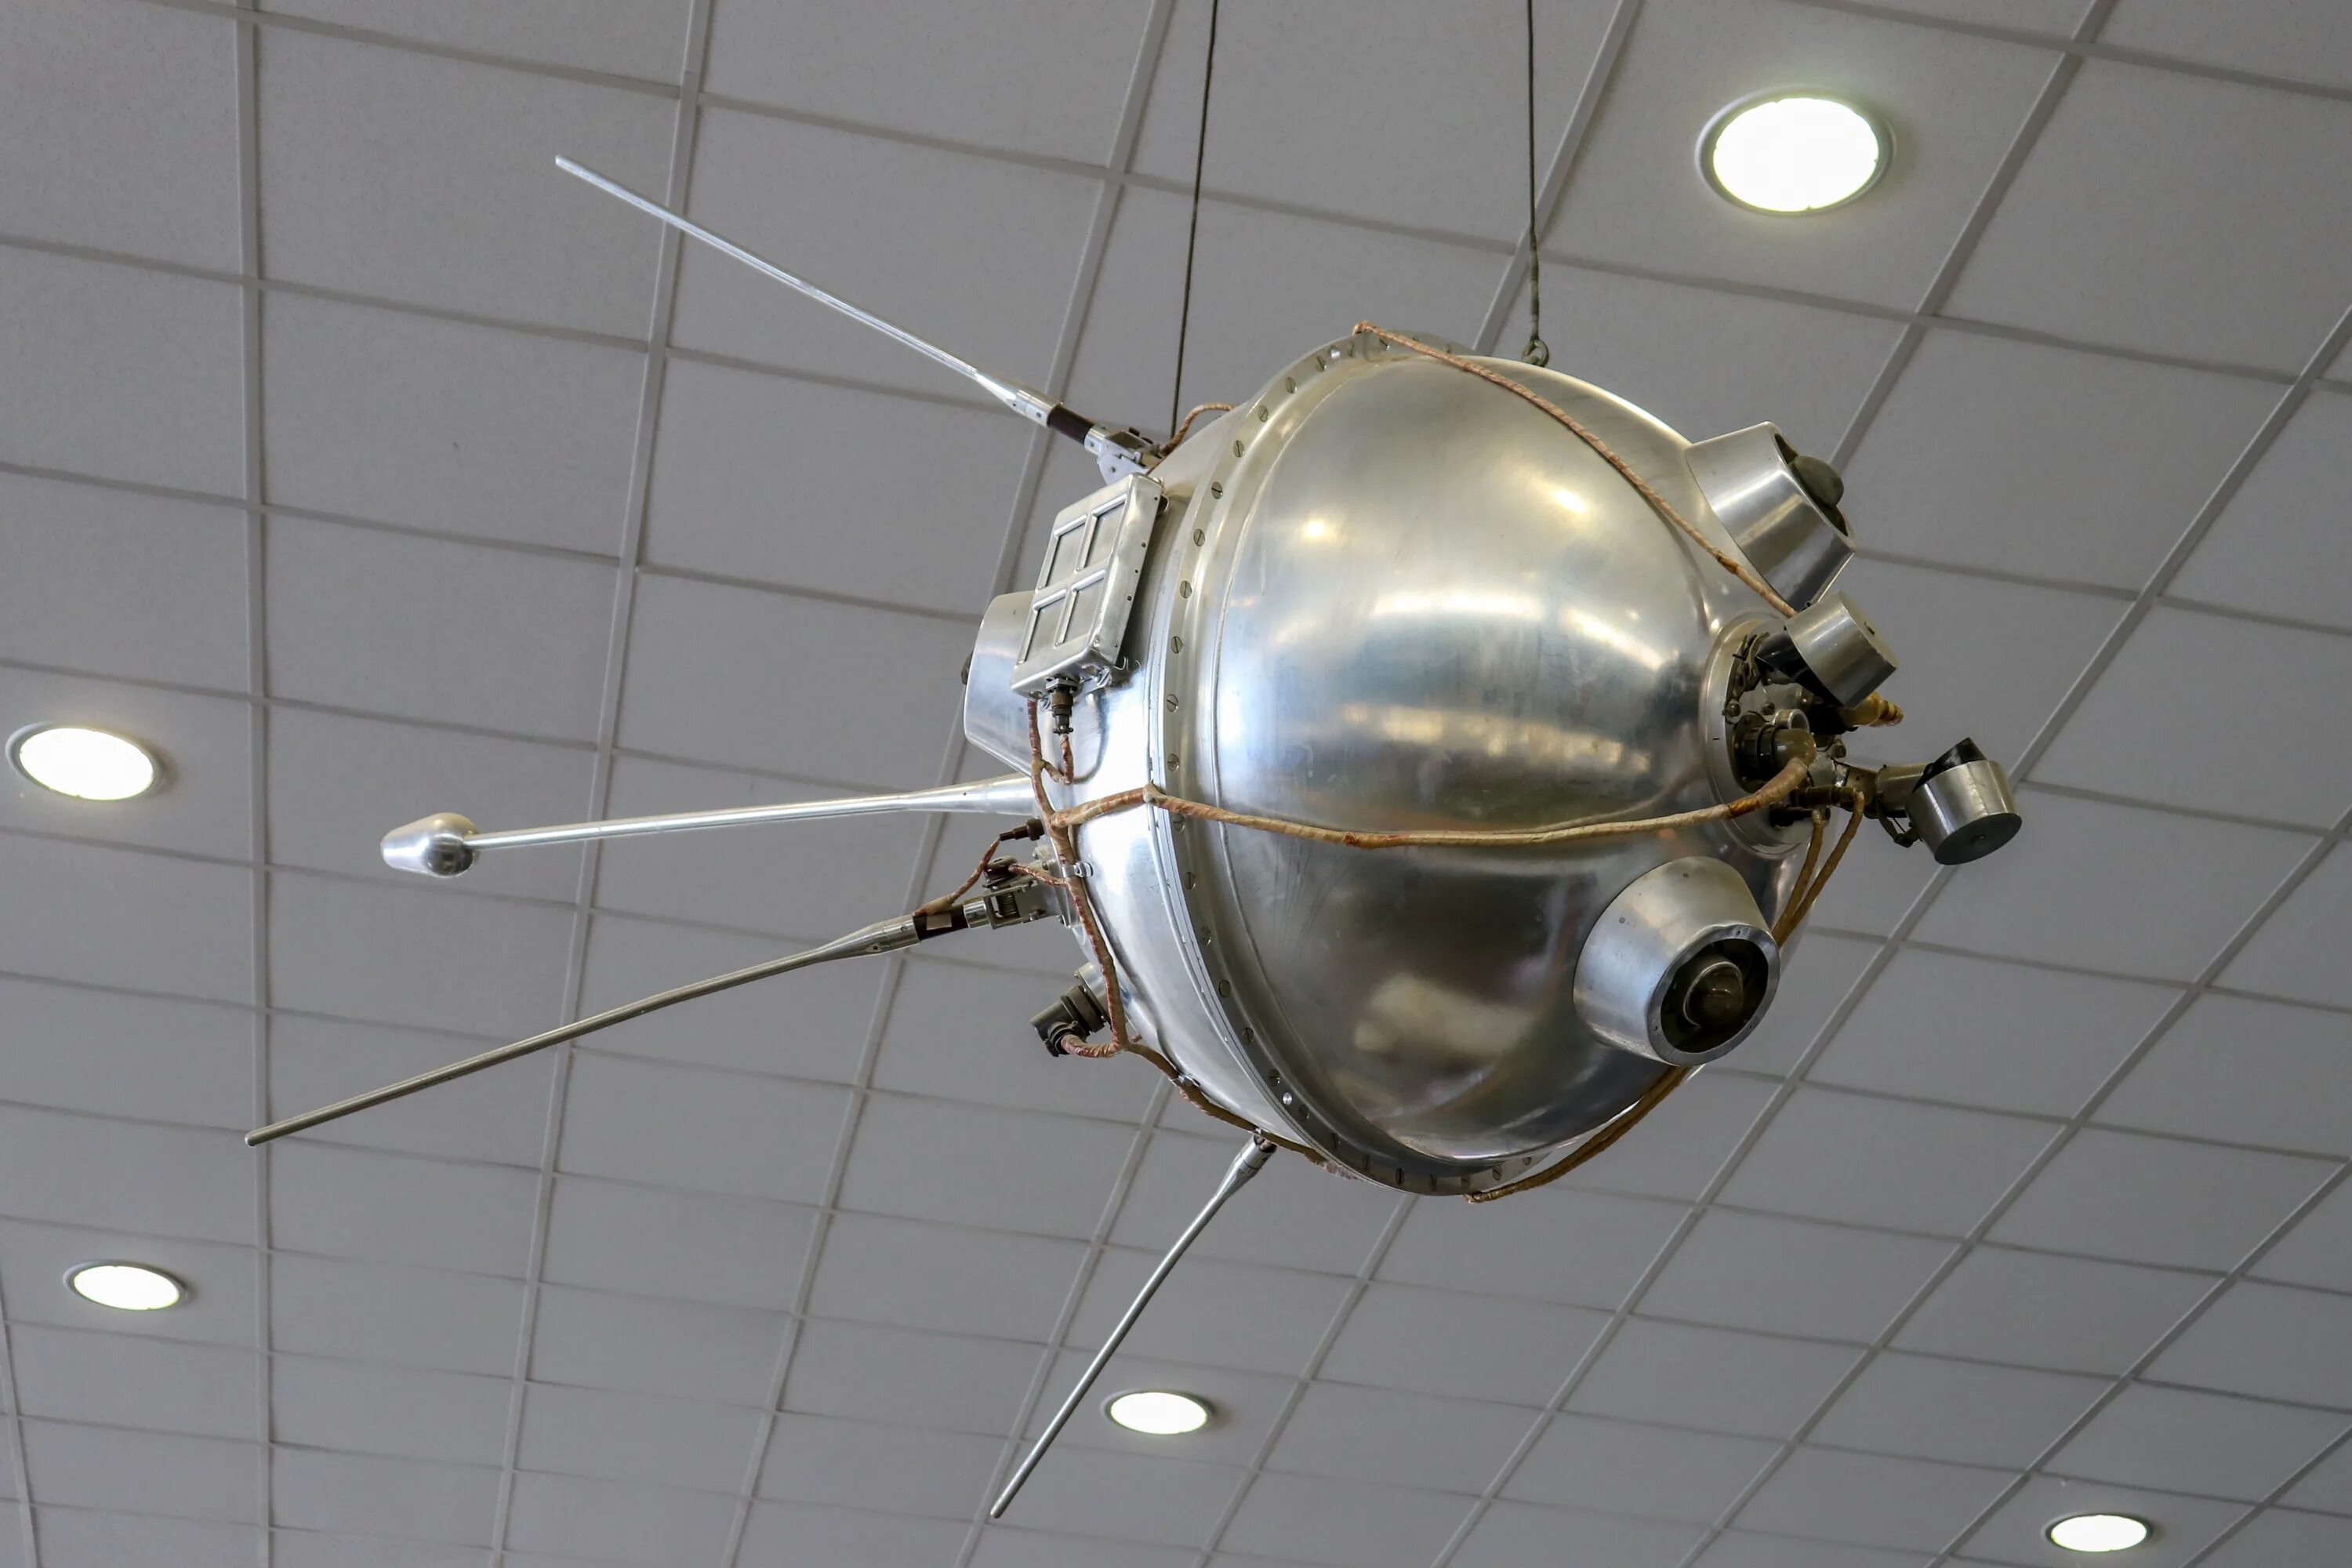 Космический аппарат ставший первым искусственным спутником солнца. АМС Луна 1. Луна-2 автоматическая межпланетная станция. Межпланетная станция Луна-1. Первый искусственный Спутник солнца Луна-1.